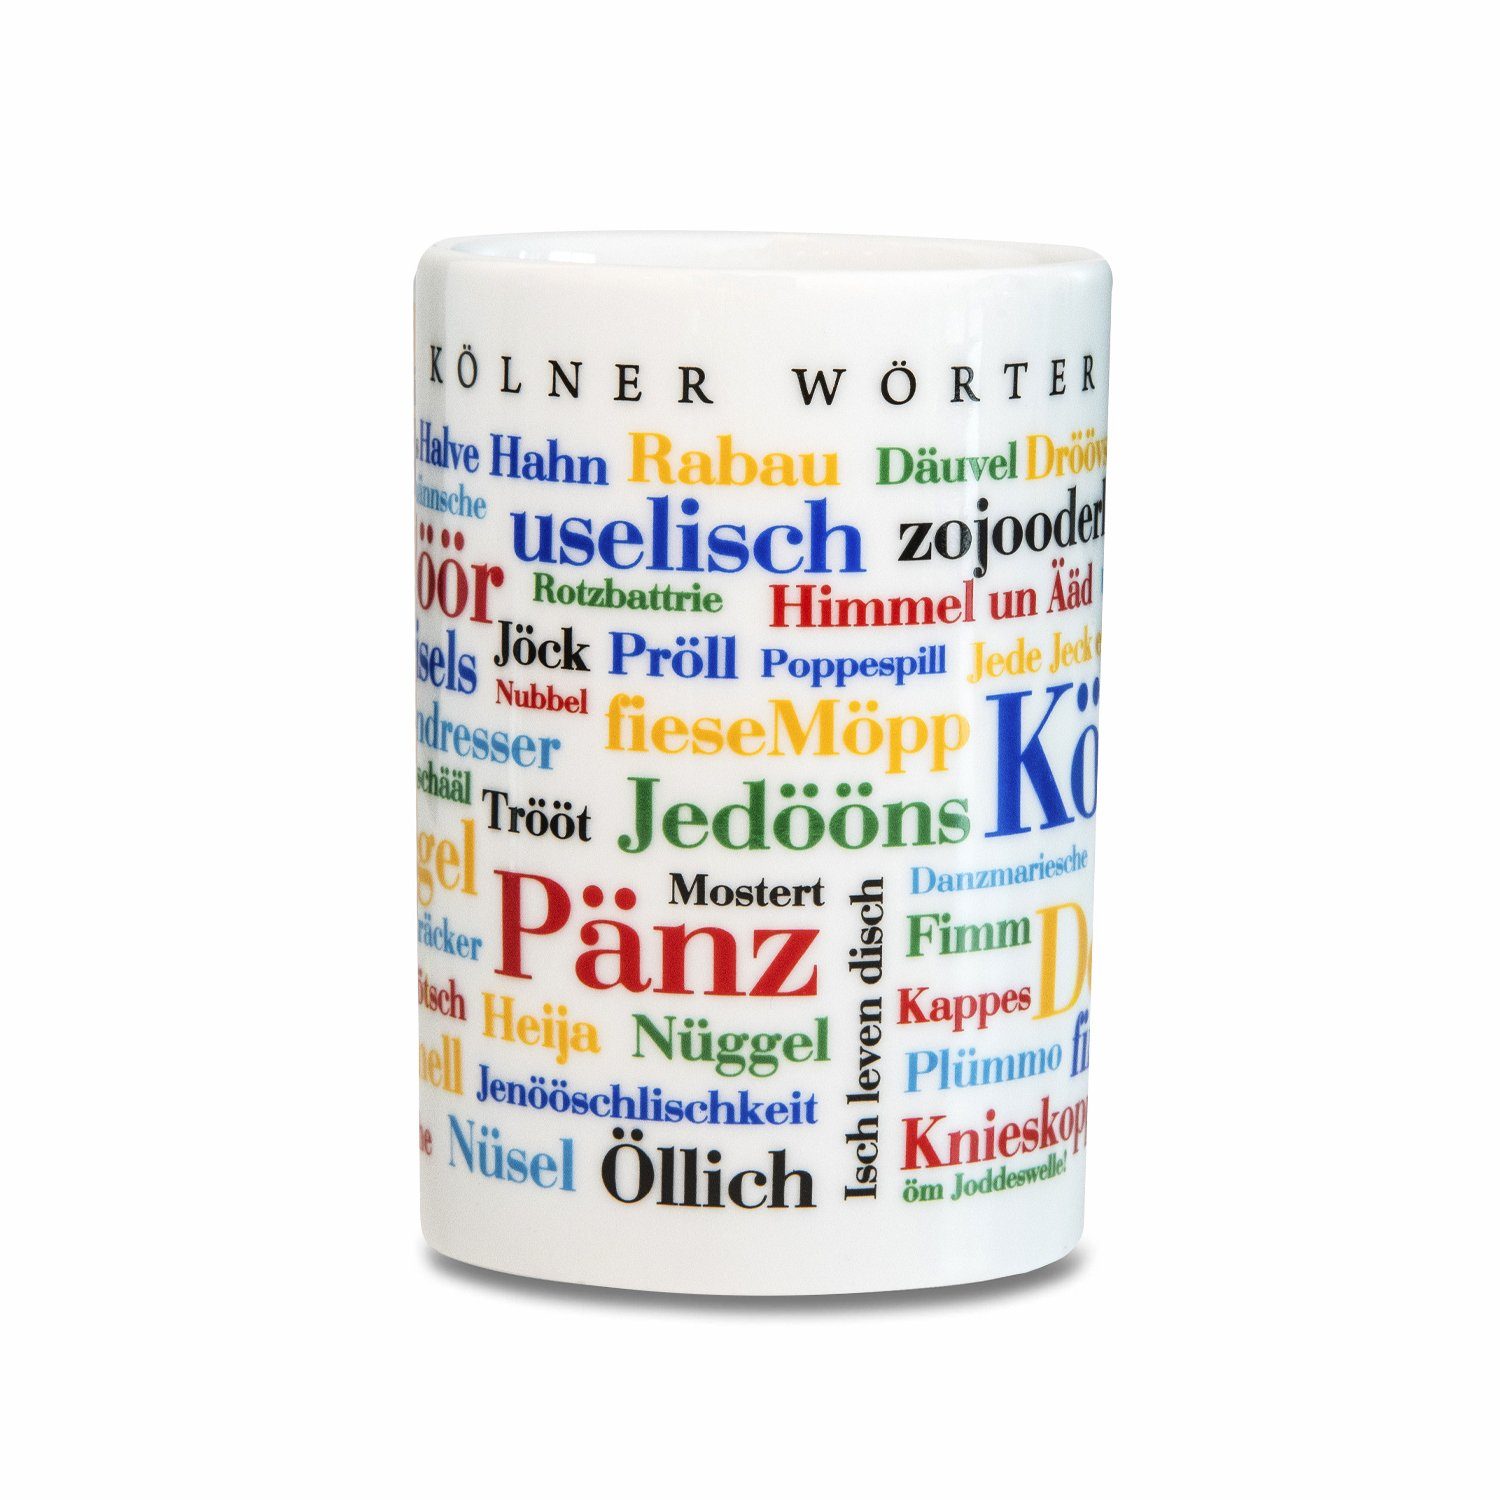 Wörter Porzellan Kölner Kaffeebecher Deine Tasse Wörter,